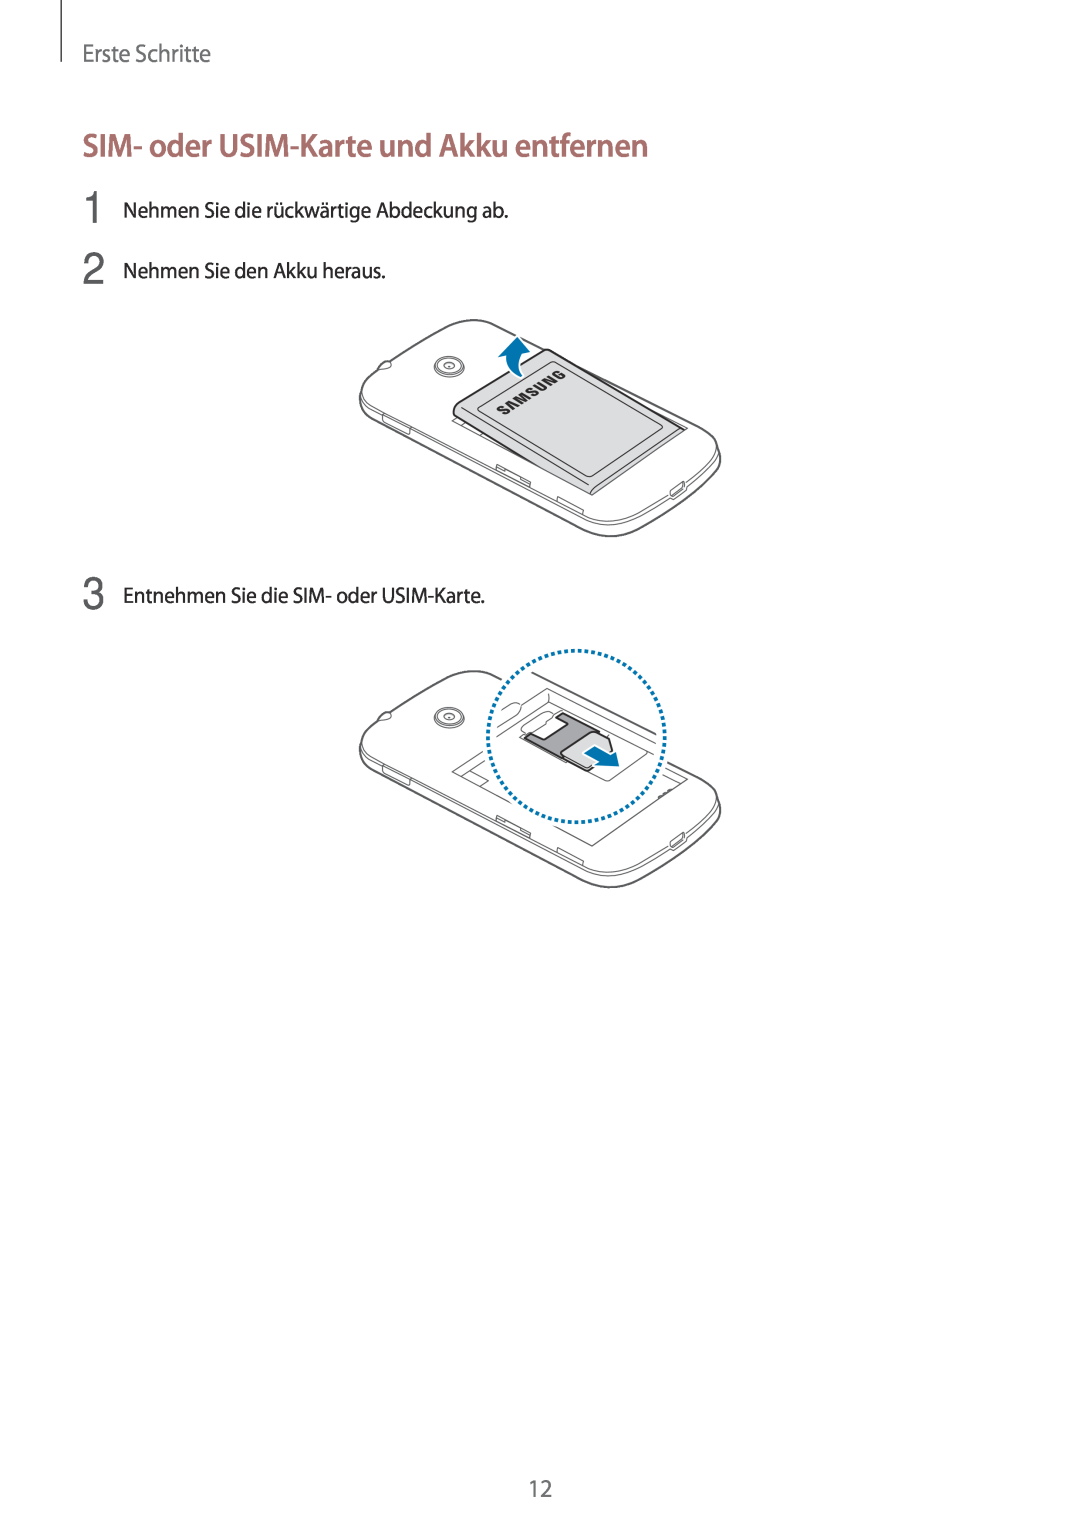 Samsung SM-G110HZWAXEF SIM- oder USIM-Karte und Akku entfernen, Erste Schritte, Entnehmen Sie die SIM- oder USIM-Karte 